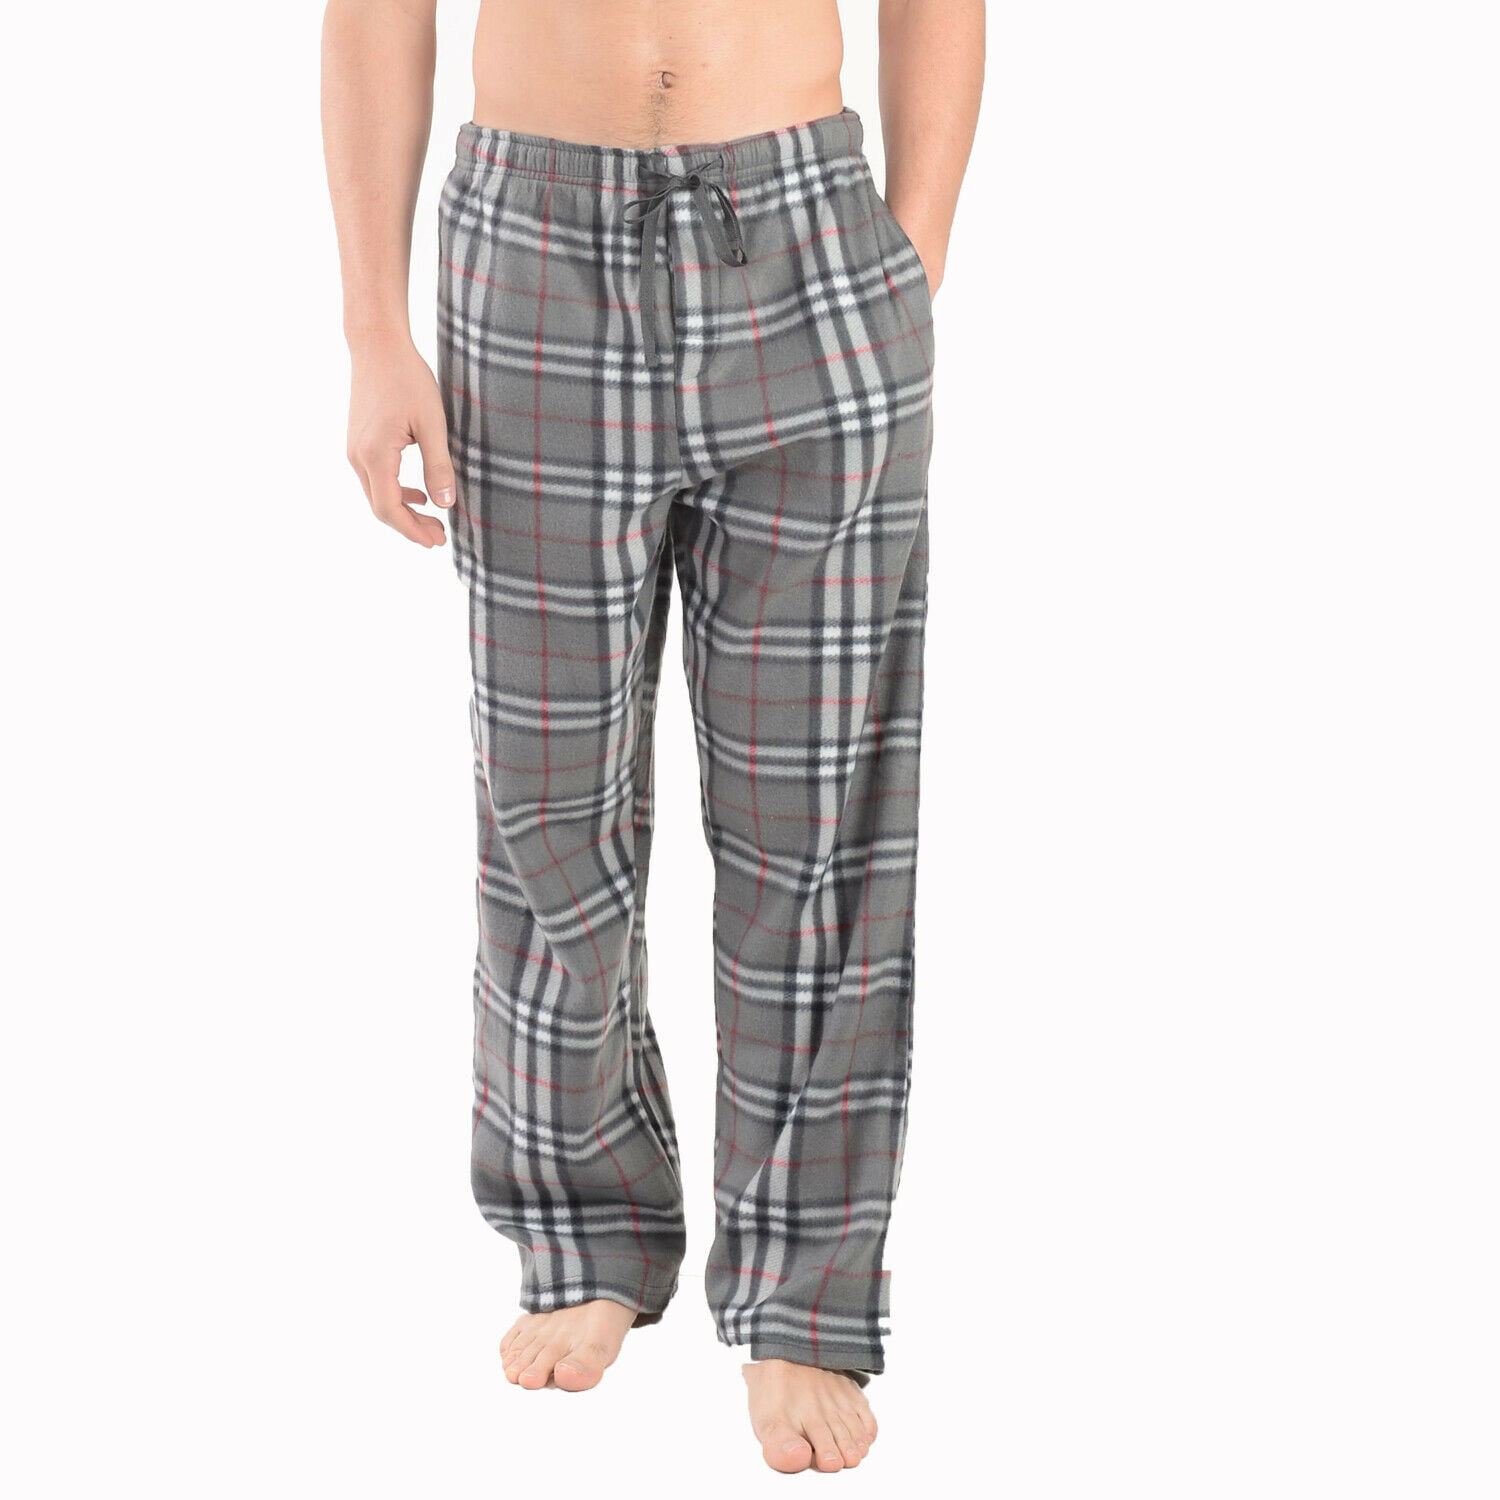 Comfy Lifestyle Men's Plaid Fleece Soft Warm Pajama Pants Bottoms ...